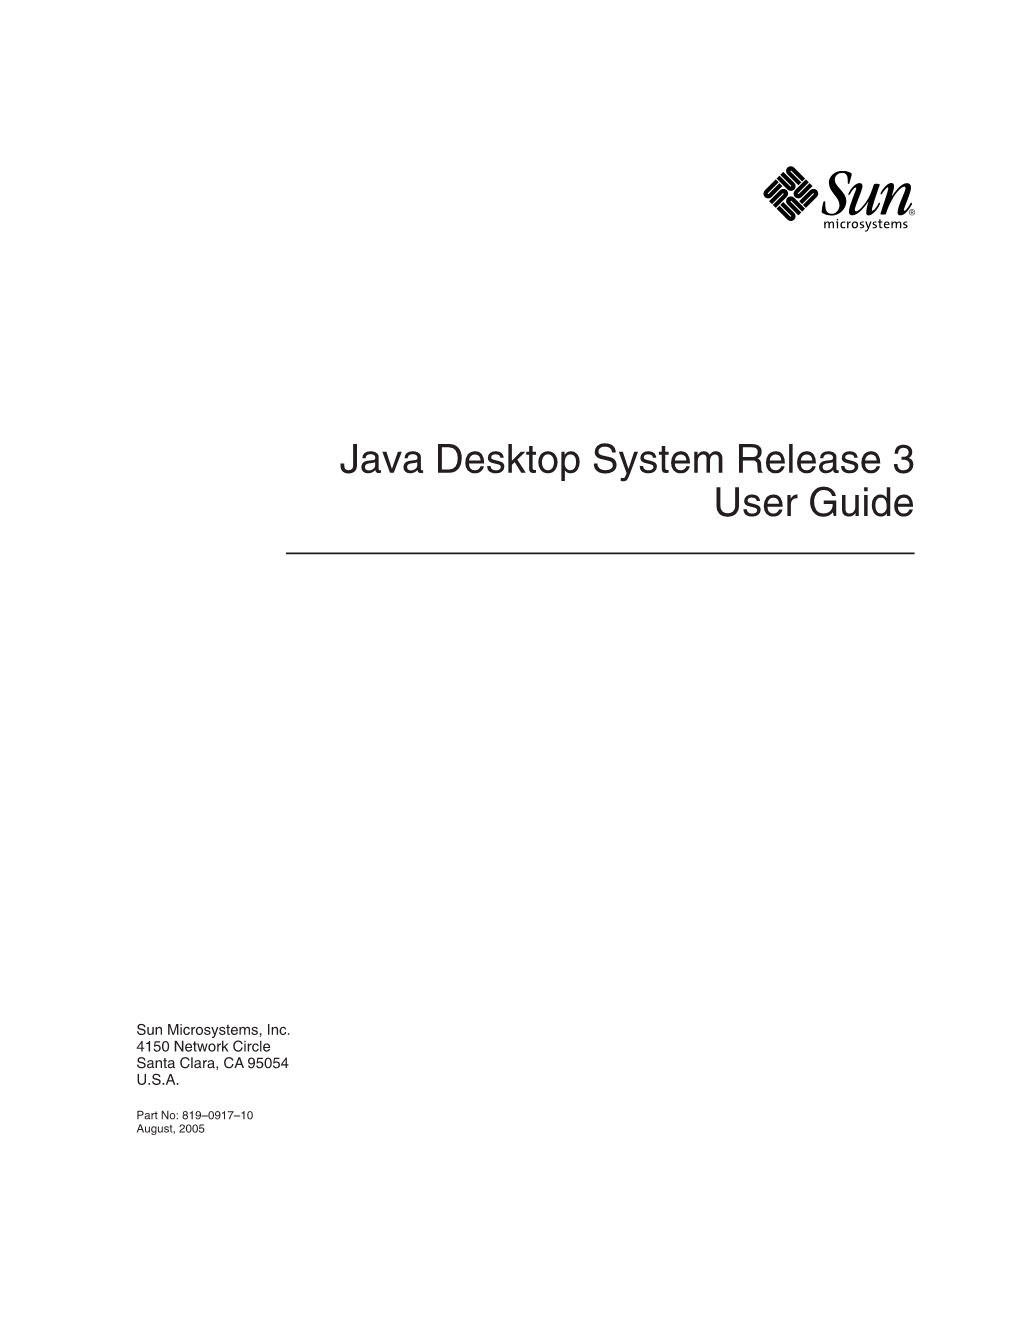 Java Desktop System Release 3 User Guide